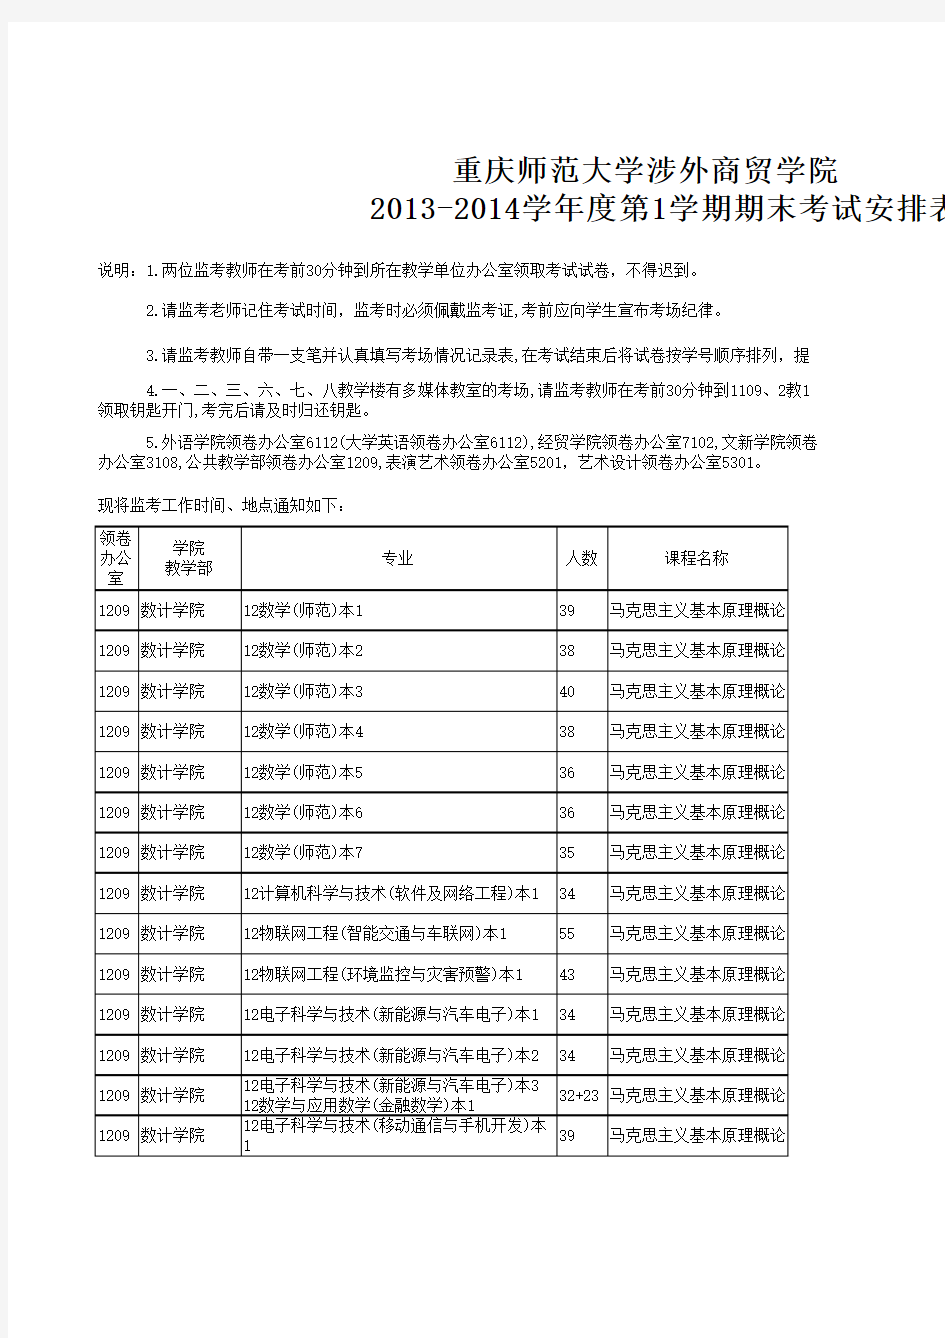 13-14-1期末考试教室安排总表(13.12.17)